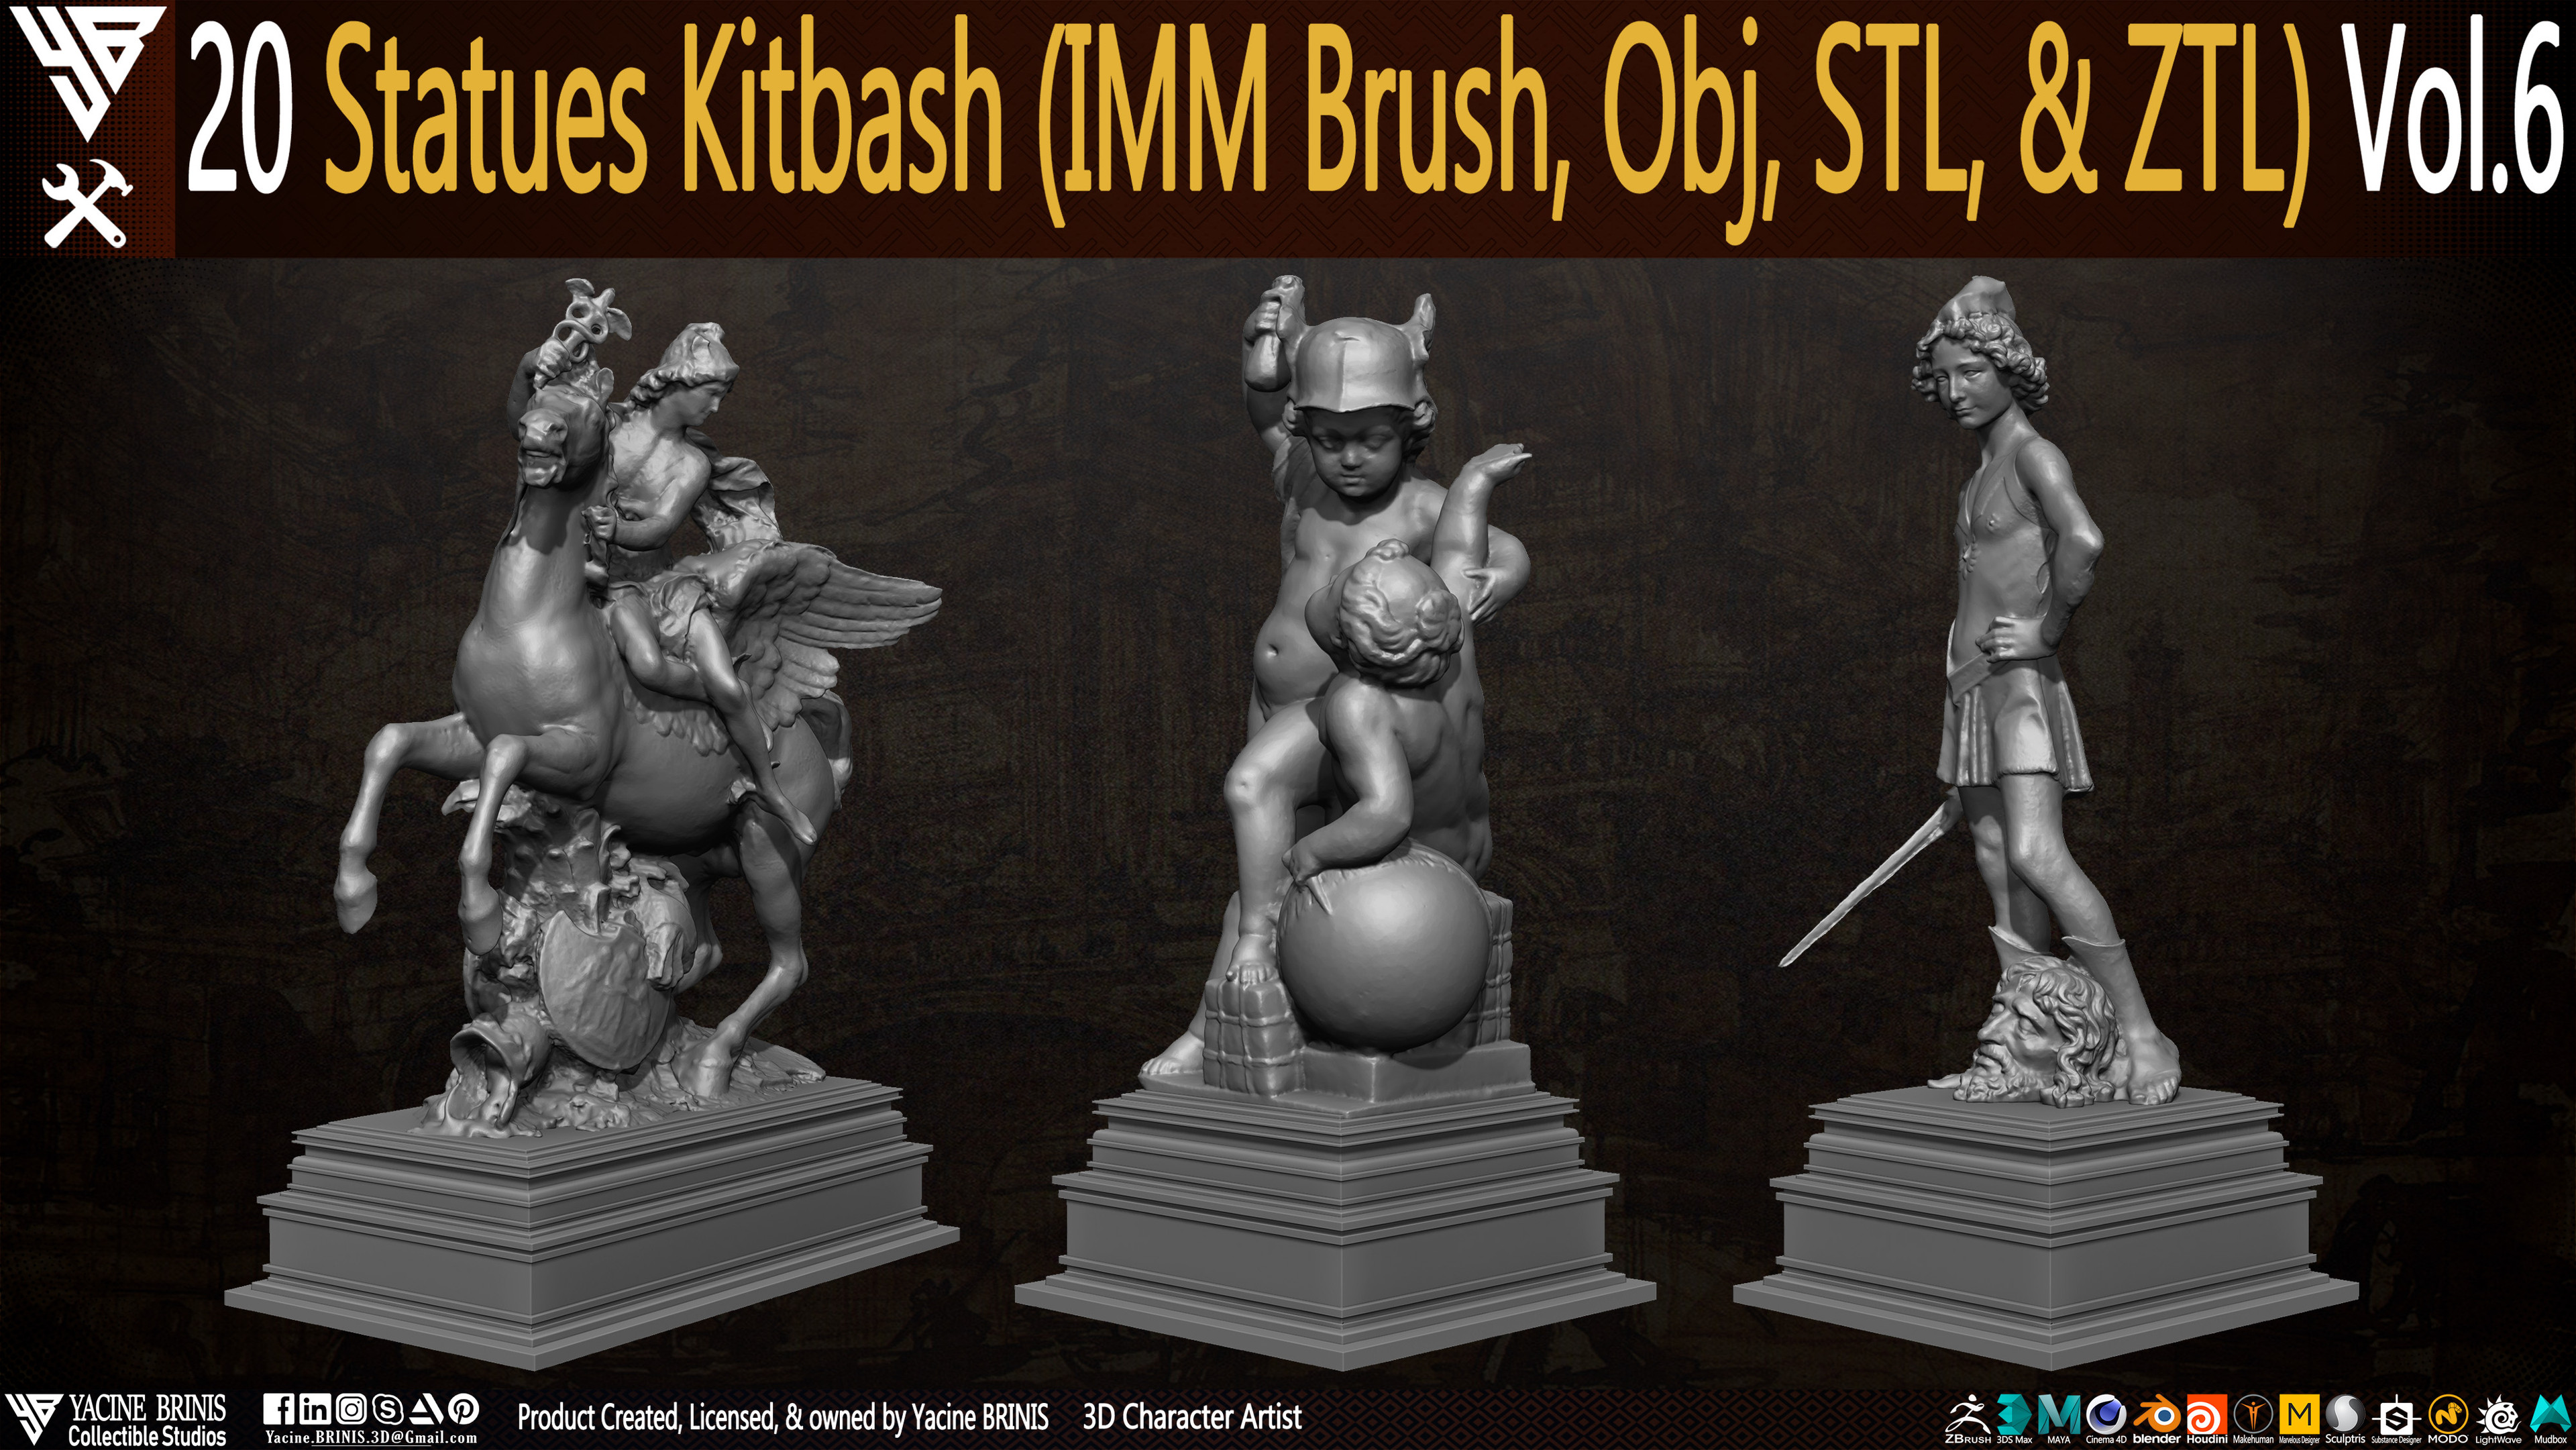 Statues Kitbash by yacine brinis Set 34